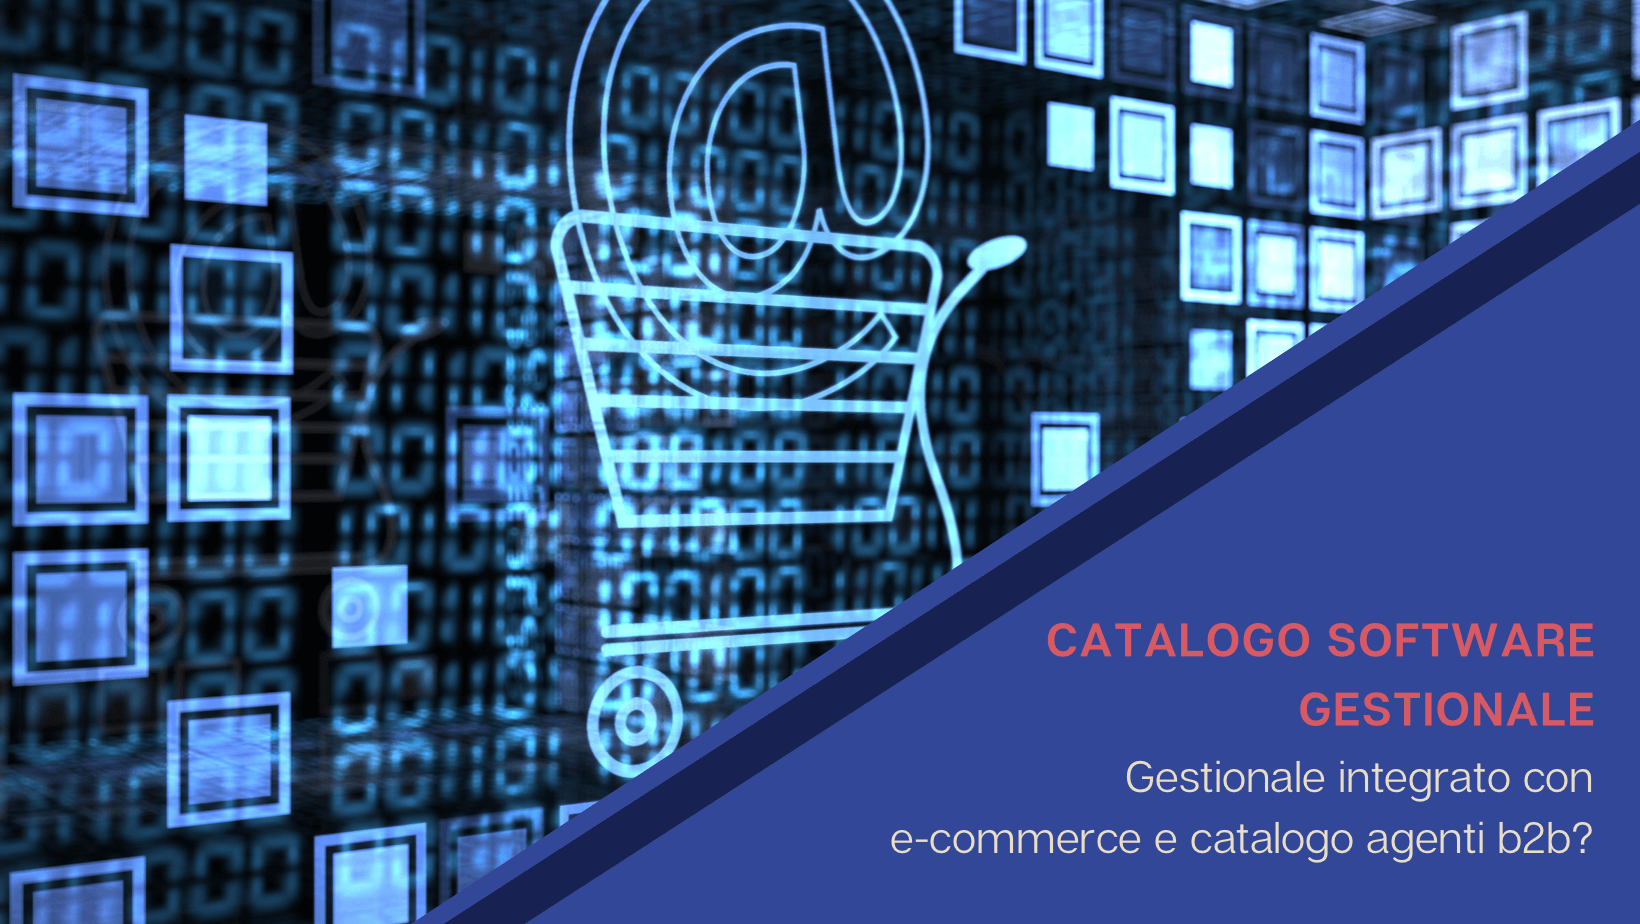 Catalogo software gestionale: come integrarlo con e-commerce e catalogo agenti B2B